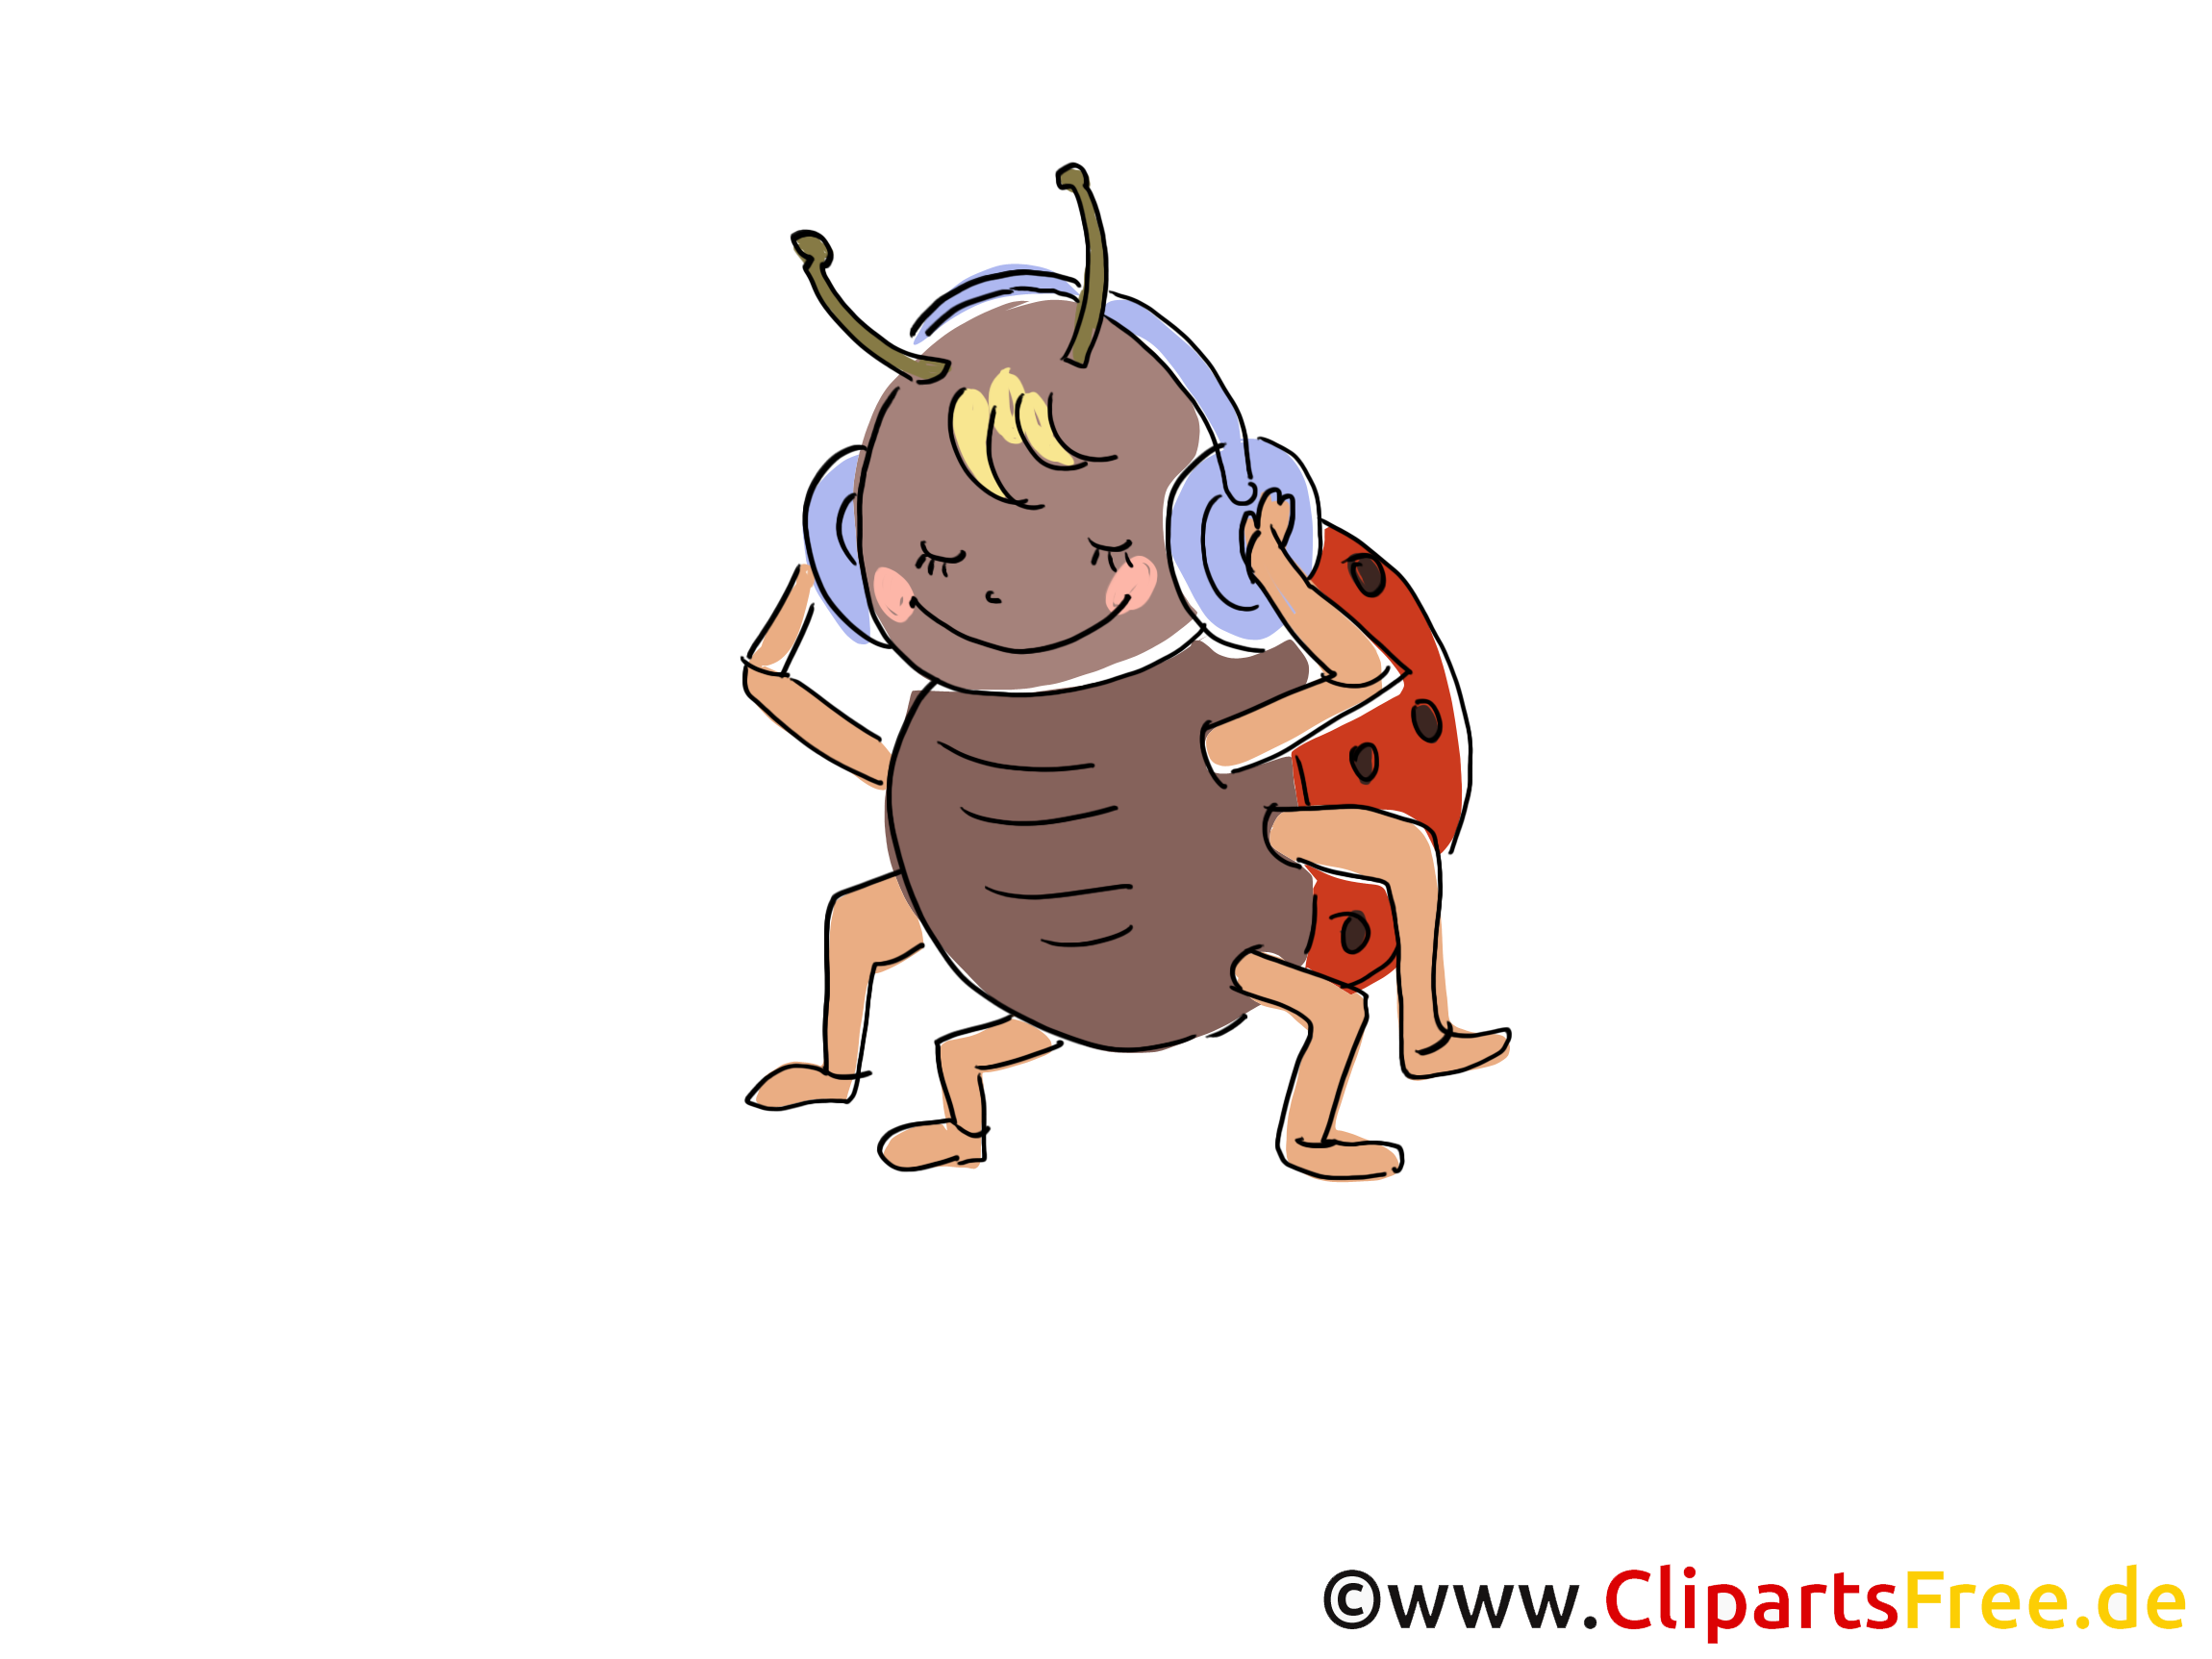 clipart insectes gratuit - photo #34